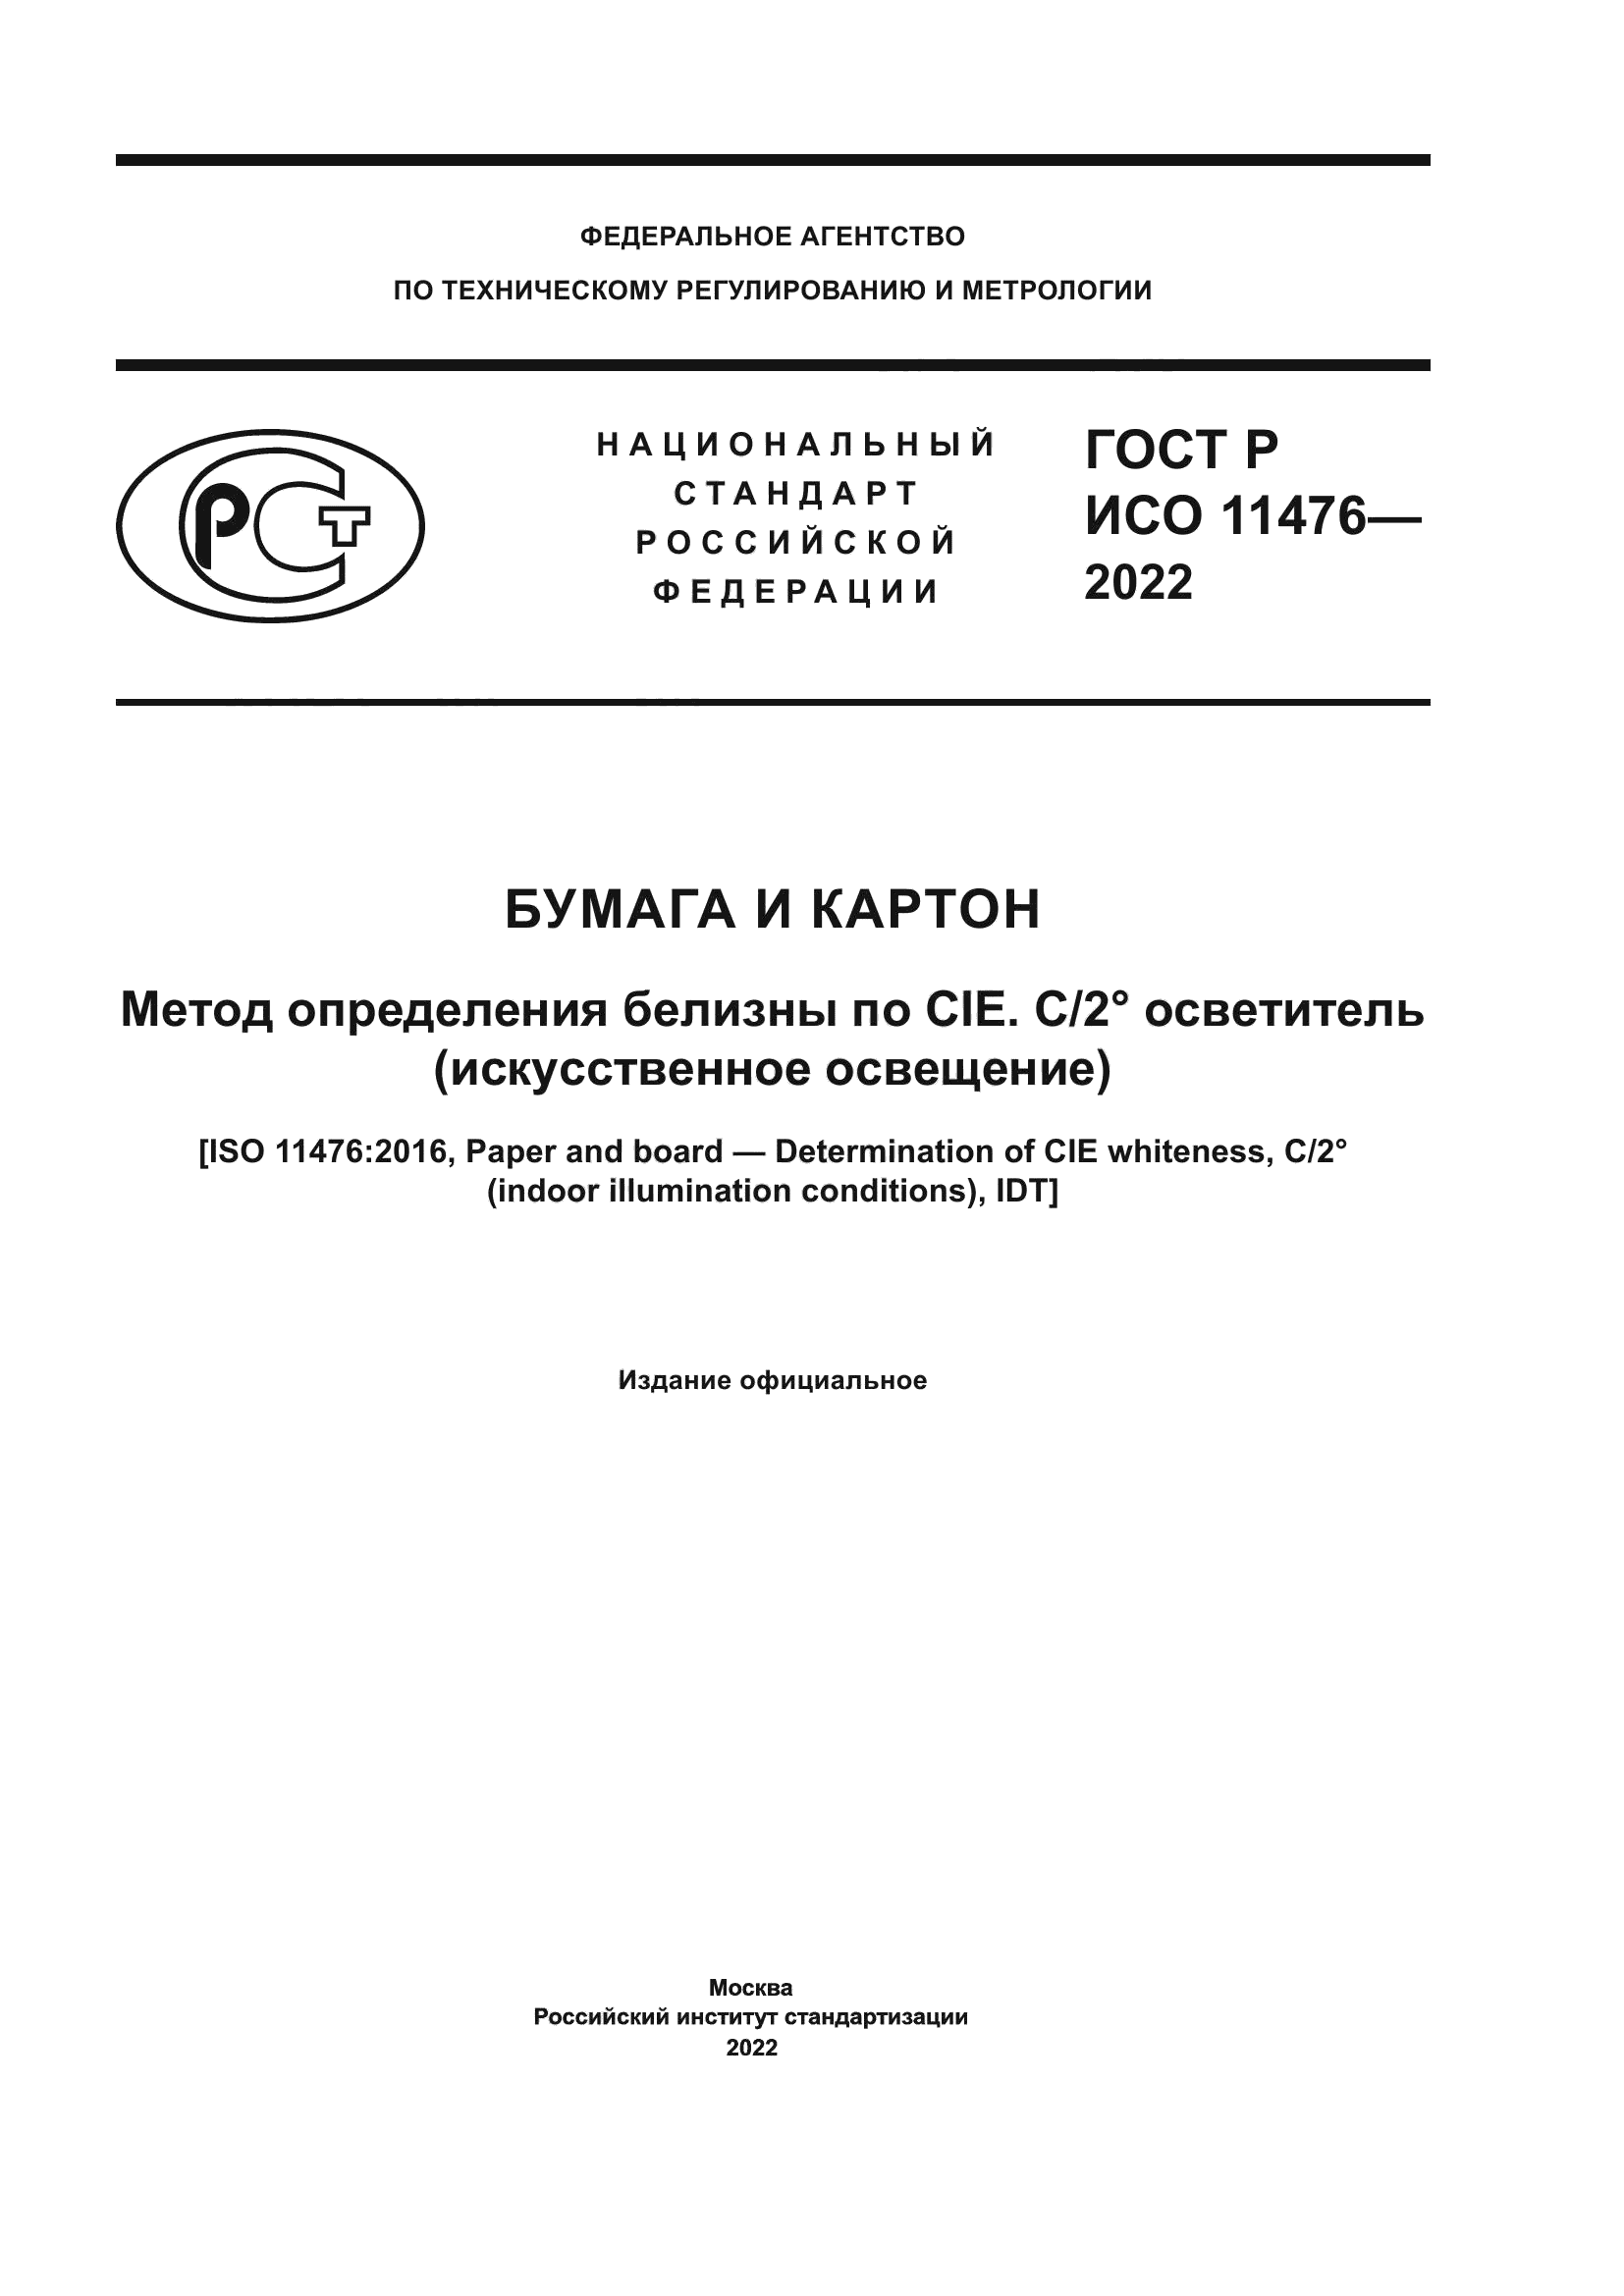 ГОСТ Р ИСО 11476-2022